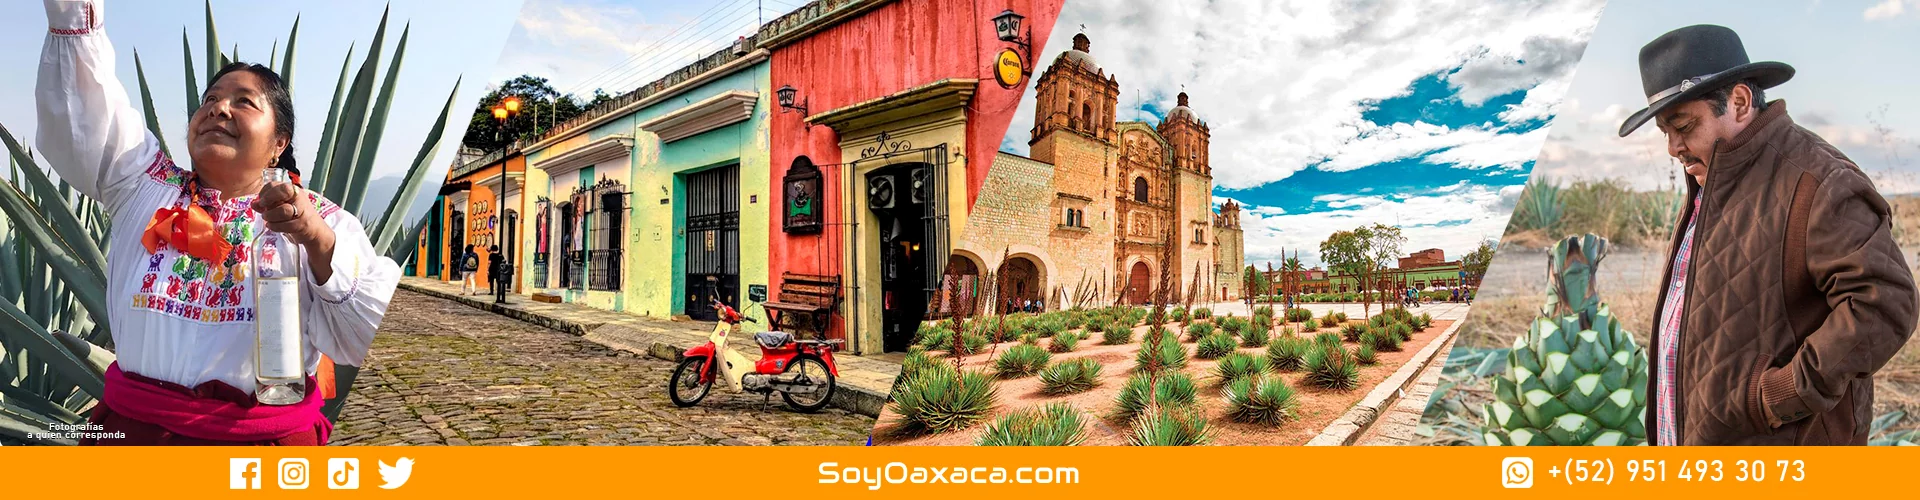 ¡Viva México! Ventas en línea de Artesanías y Gastronomía mexicana ponen en alto el nombre del país